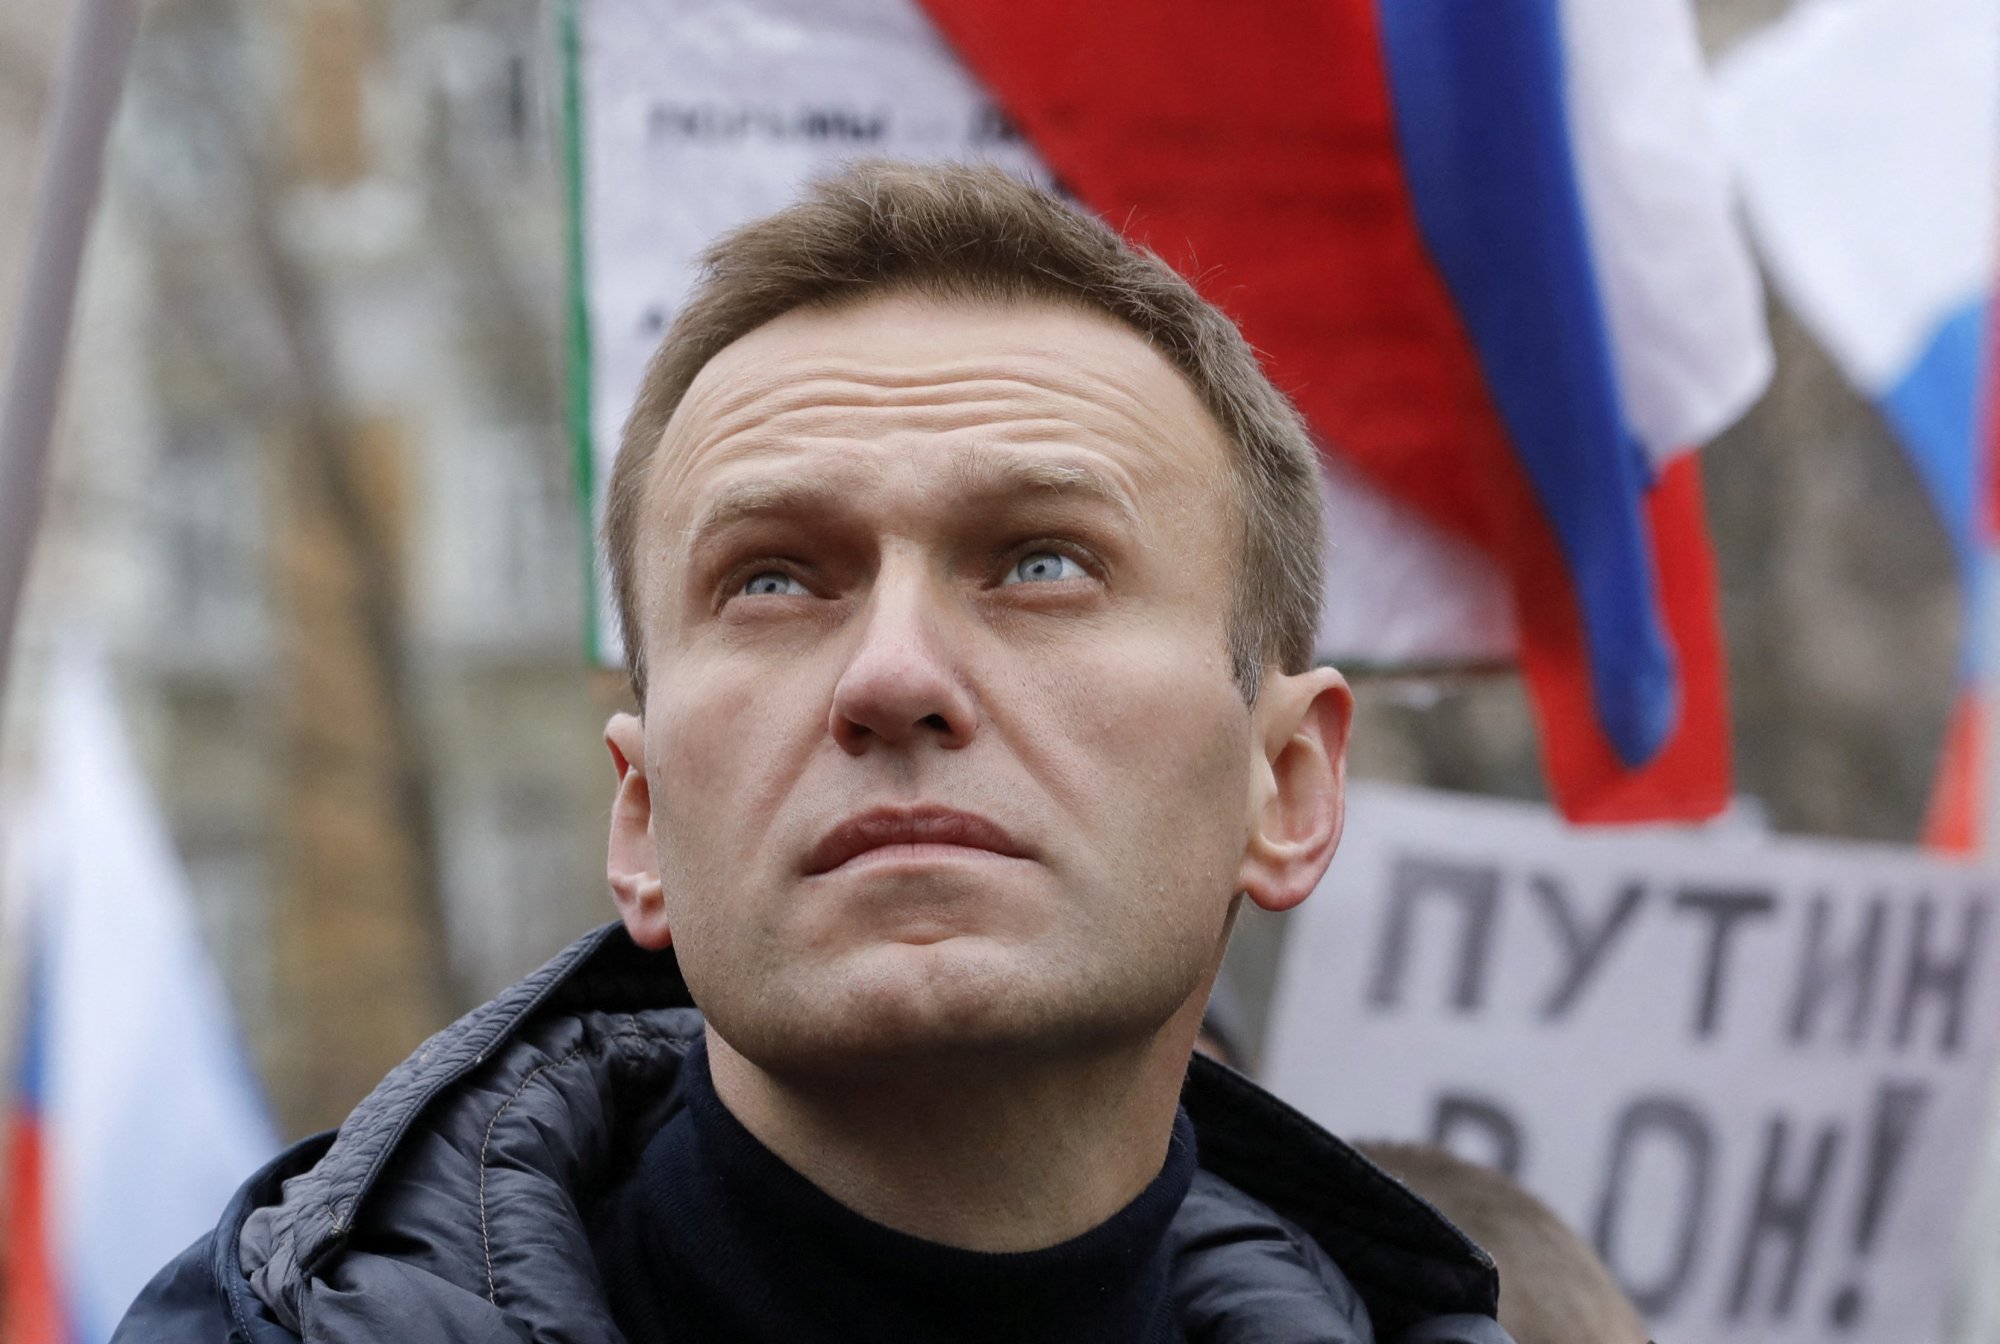 Ναβάλνι: «Ο Πούτιν σκότωσε τον σύζυγό μου – Τον δηλητηρίασαν με novichok», καταγγέλλει η σύζυγός του